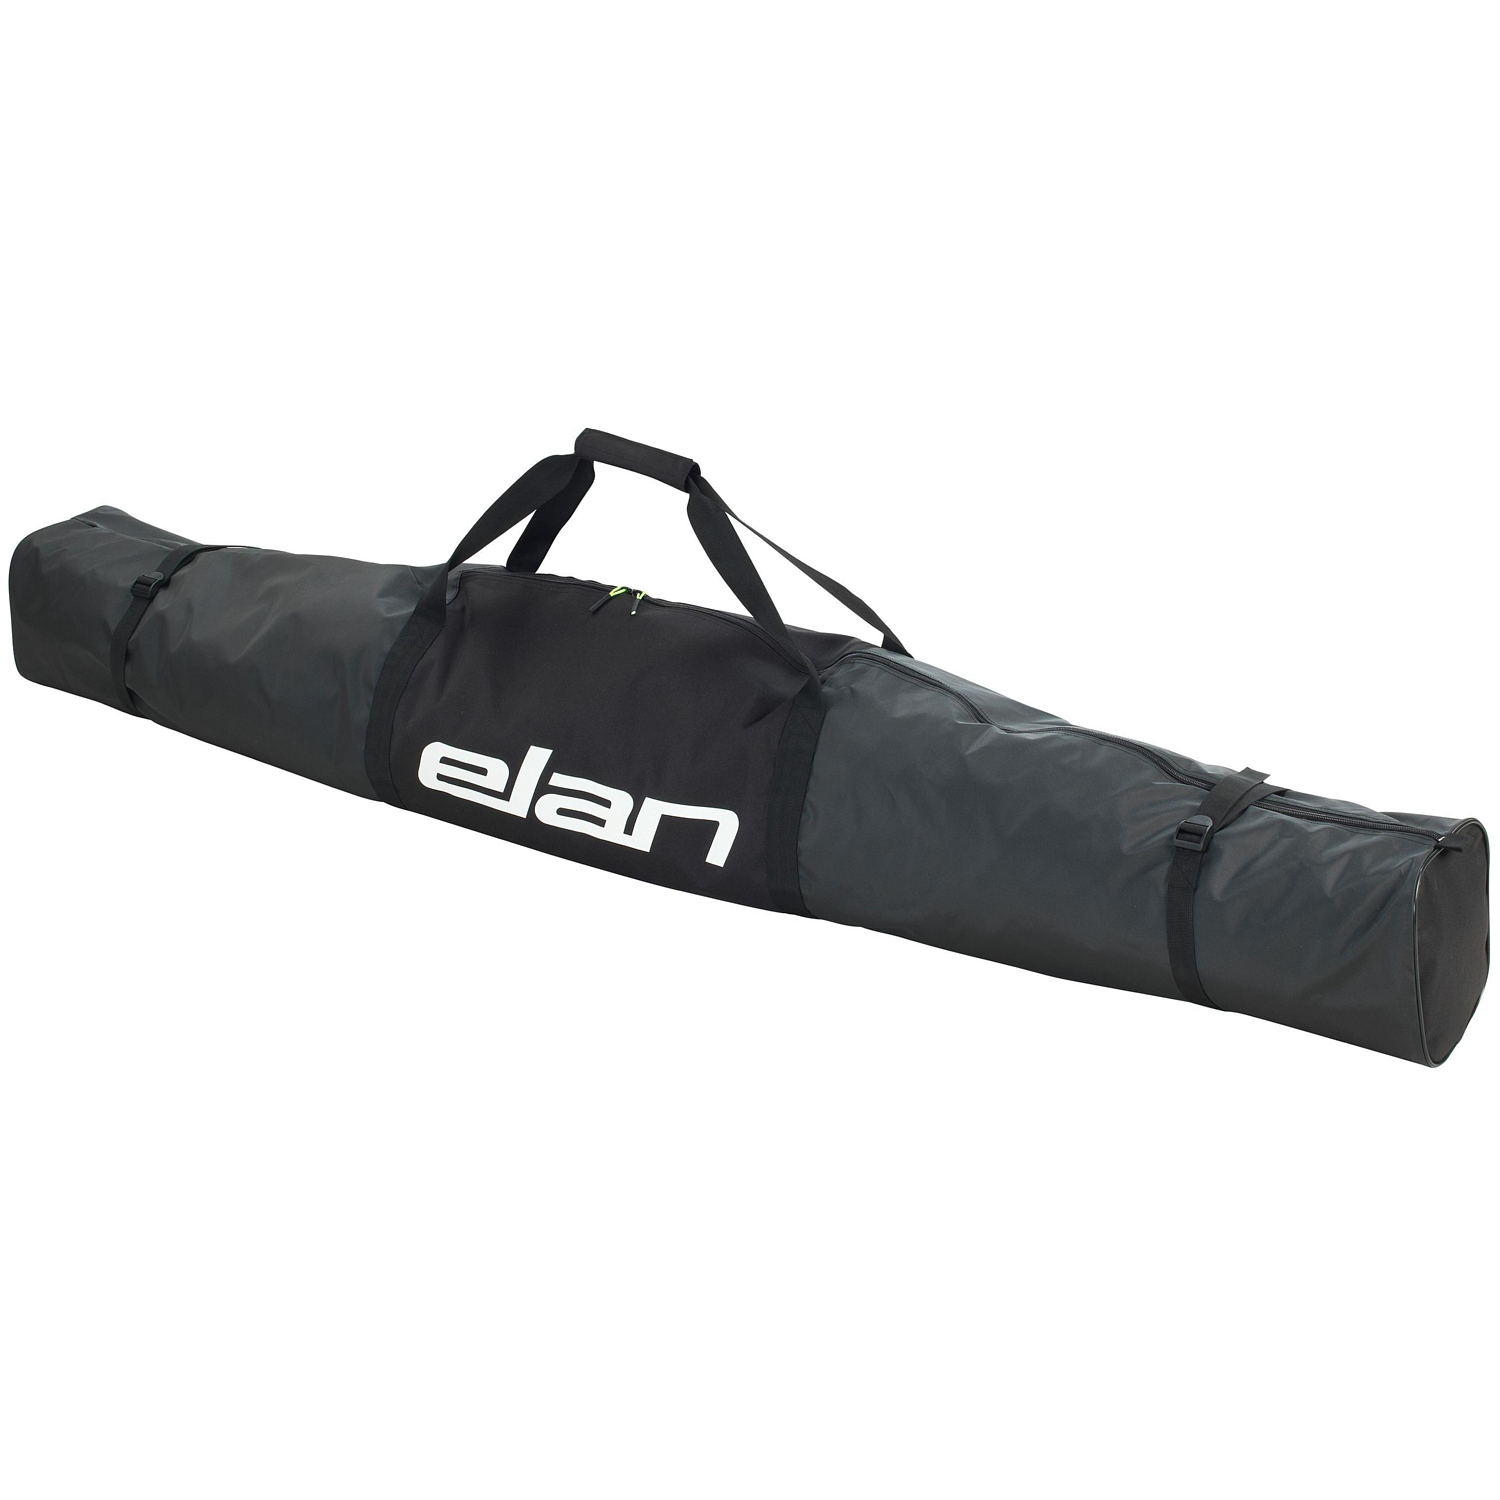 Чехол для горных лыж Elan 1P Ski Bag, black, 180 см